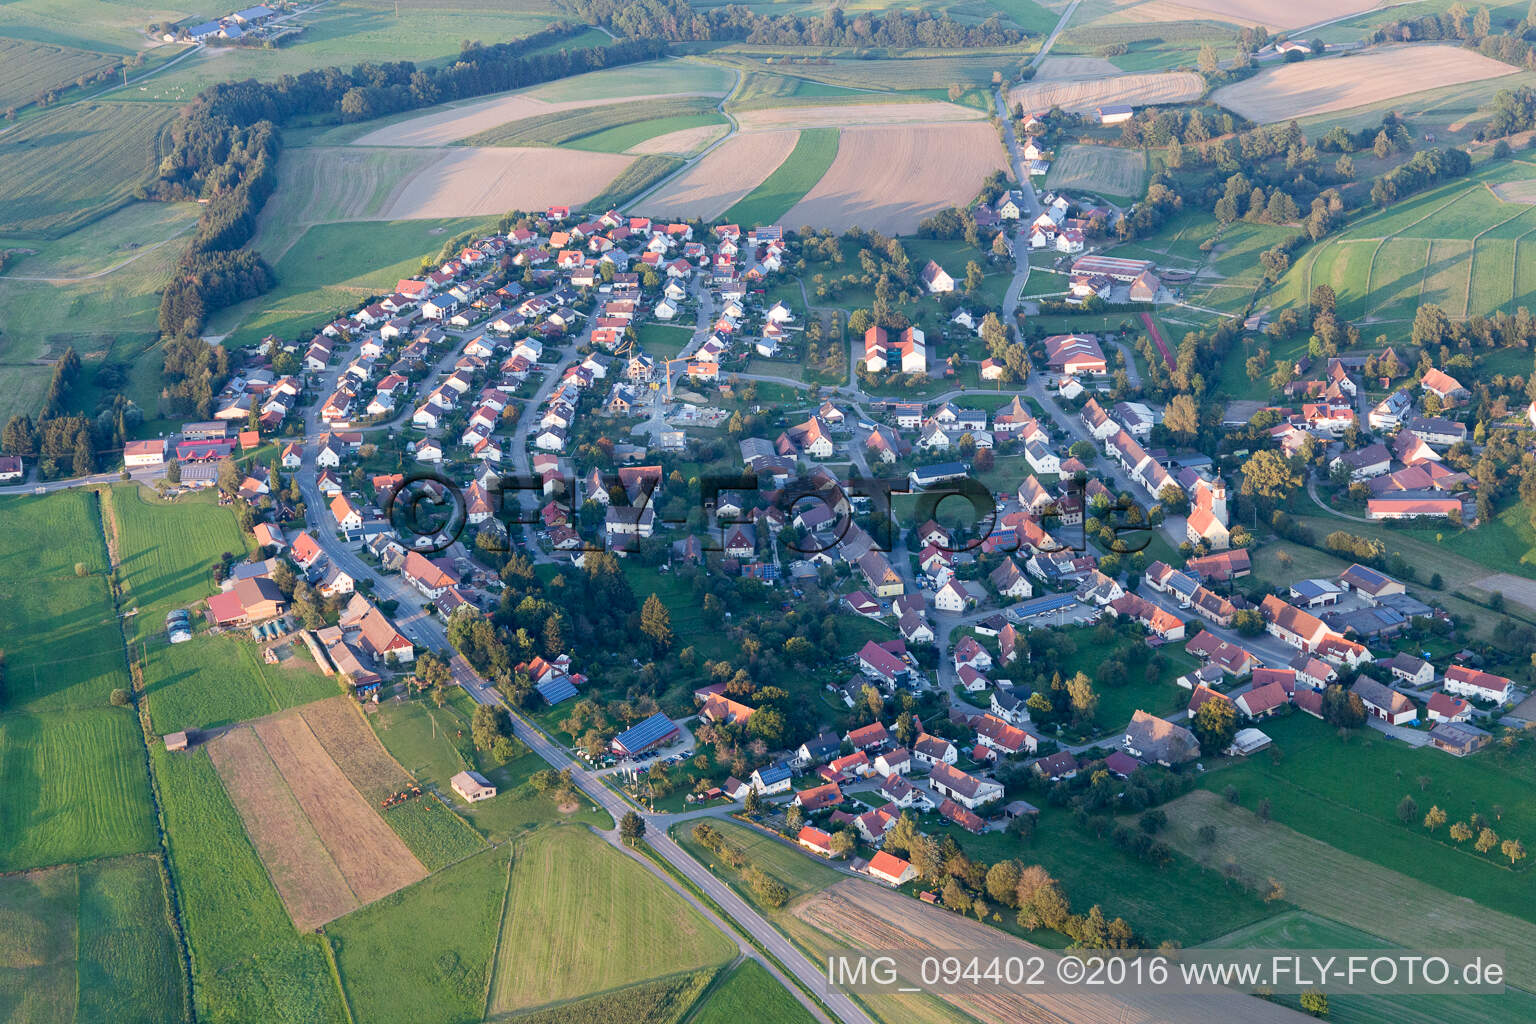 Vue aérienne de Dans le quartier Aach-Linz à Pfullendorf dans le département Bade-Wurtemberg, Allemagne